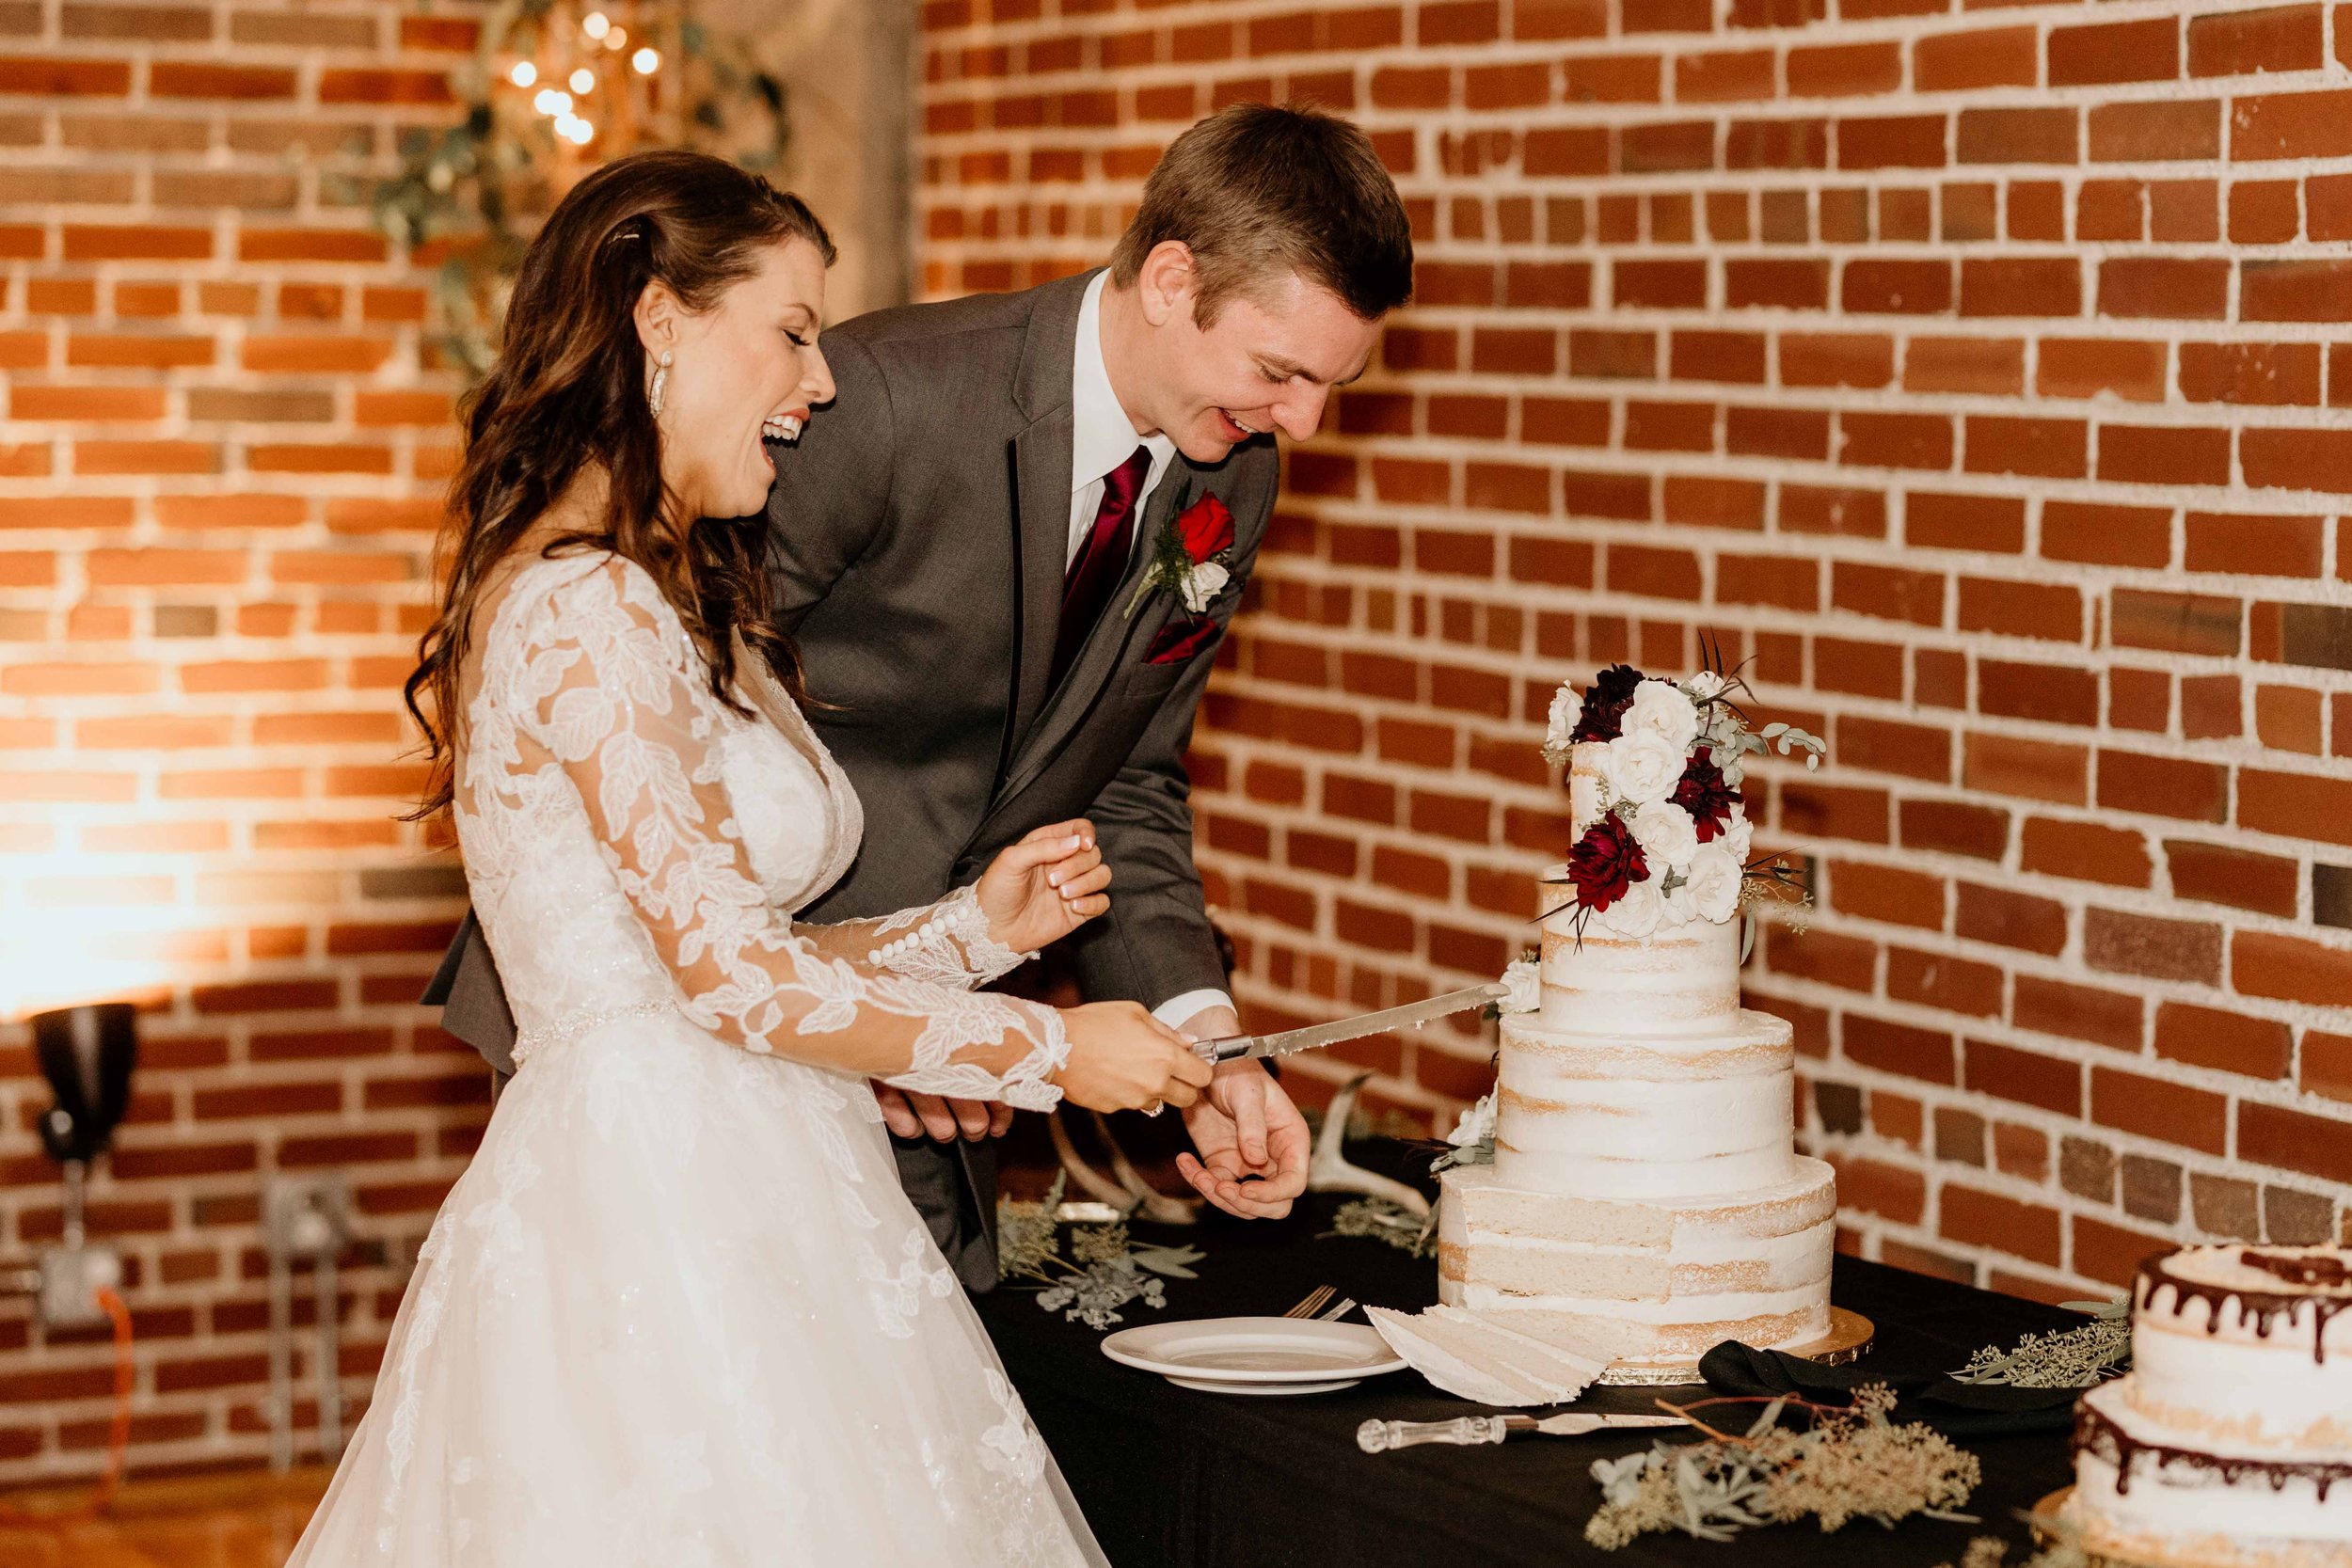 Illinois wedding photographer, Missouri wedding photographer, cake cutting